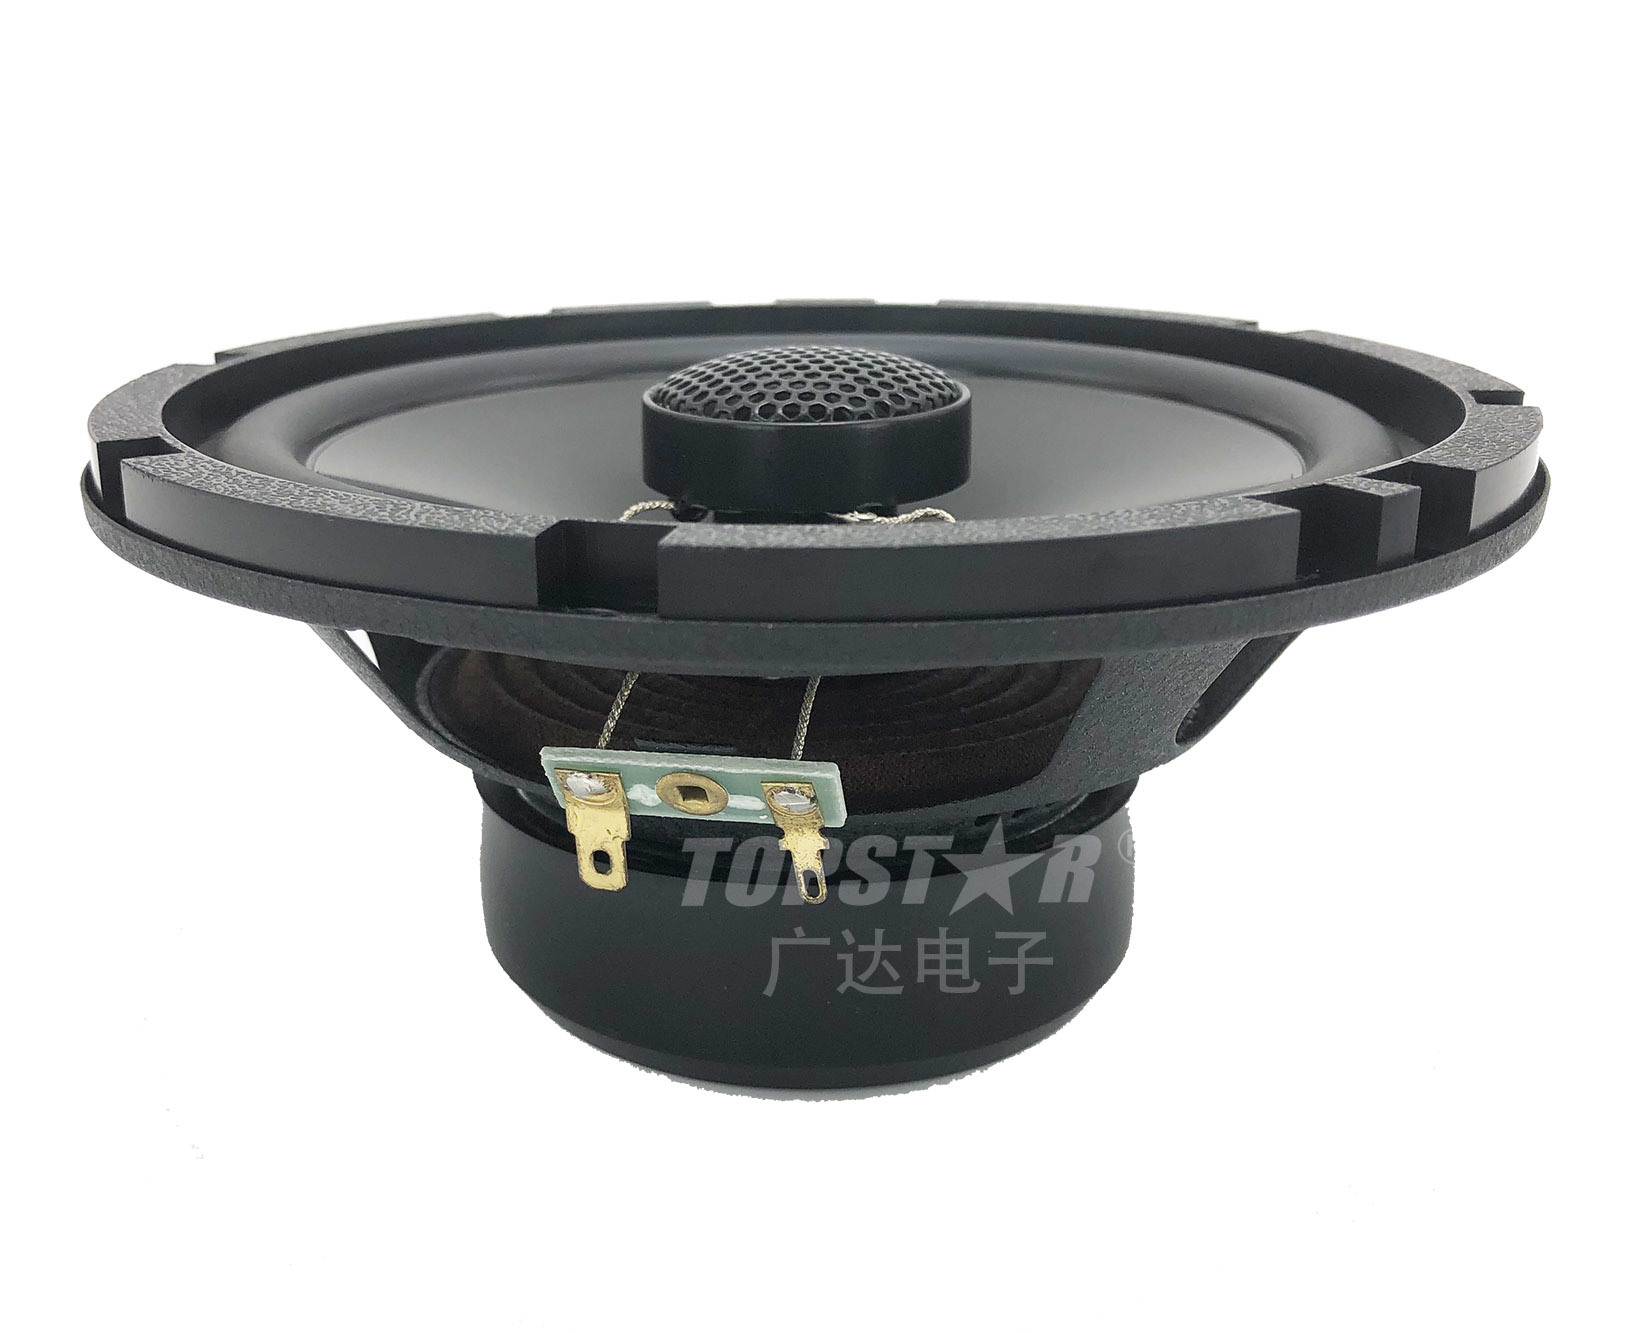 Premium Quality Car Speaker Hjg-3652